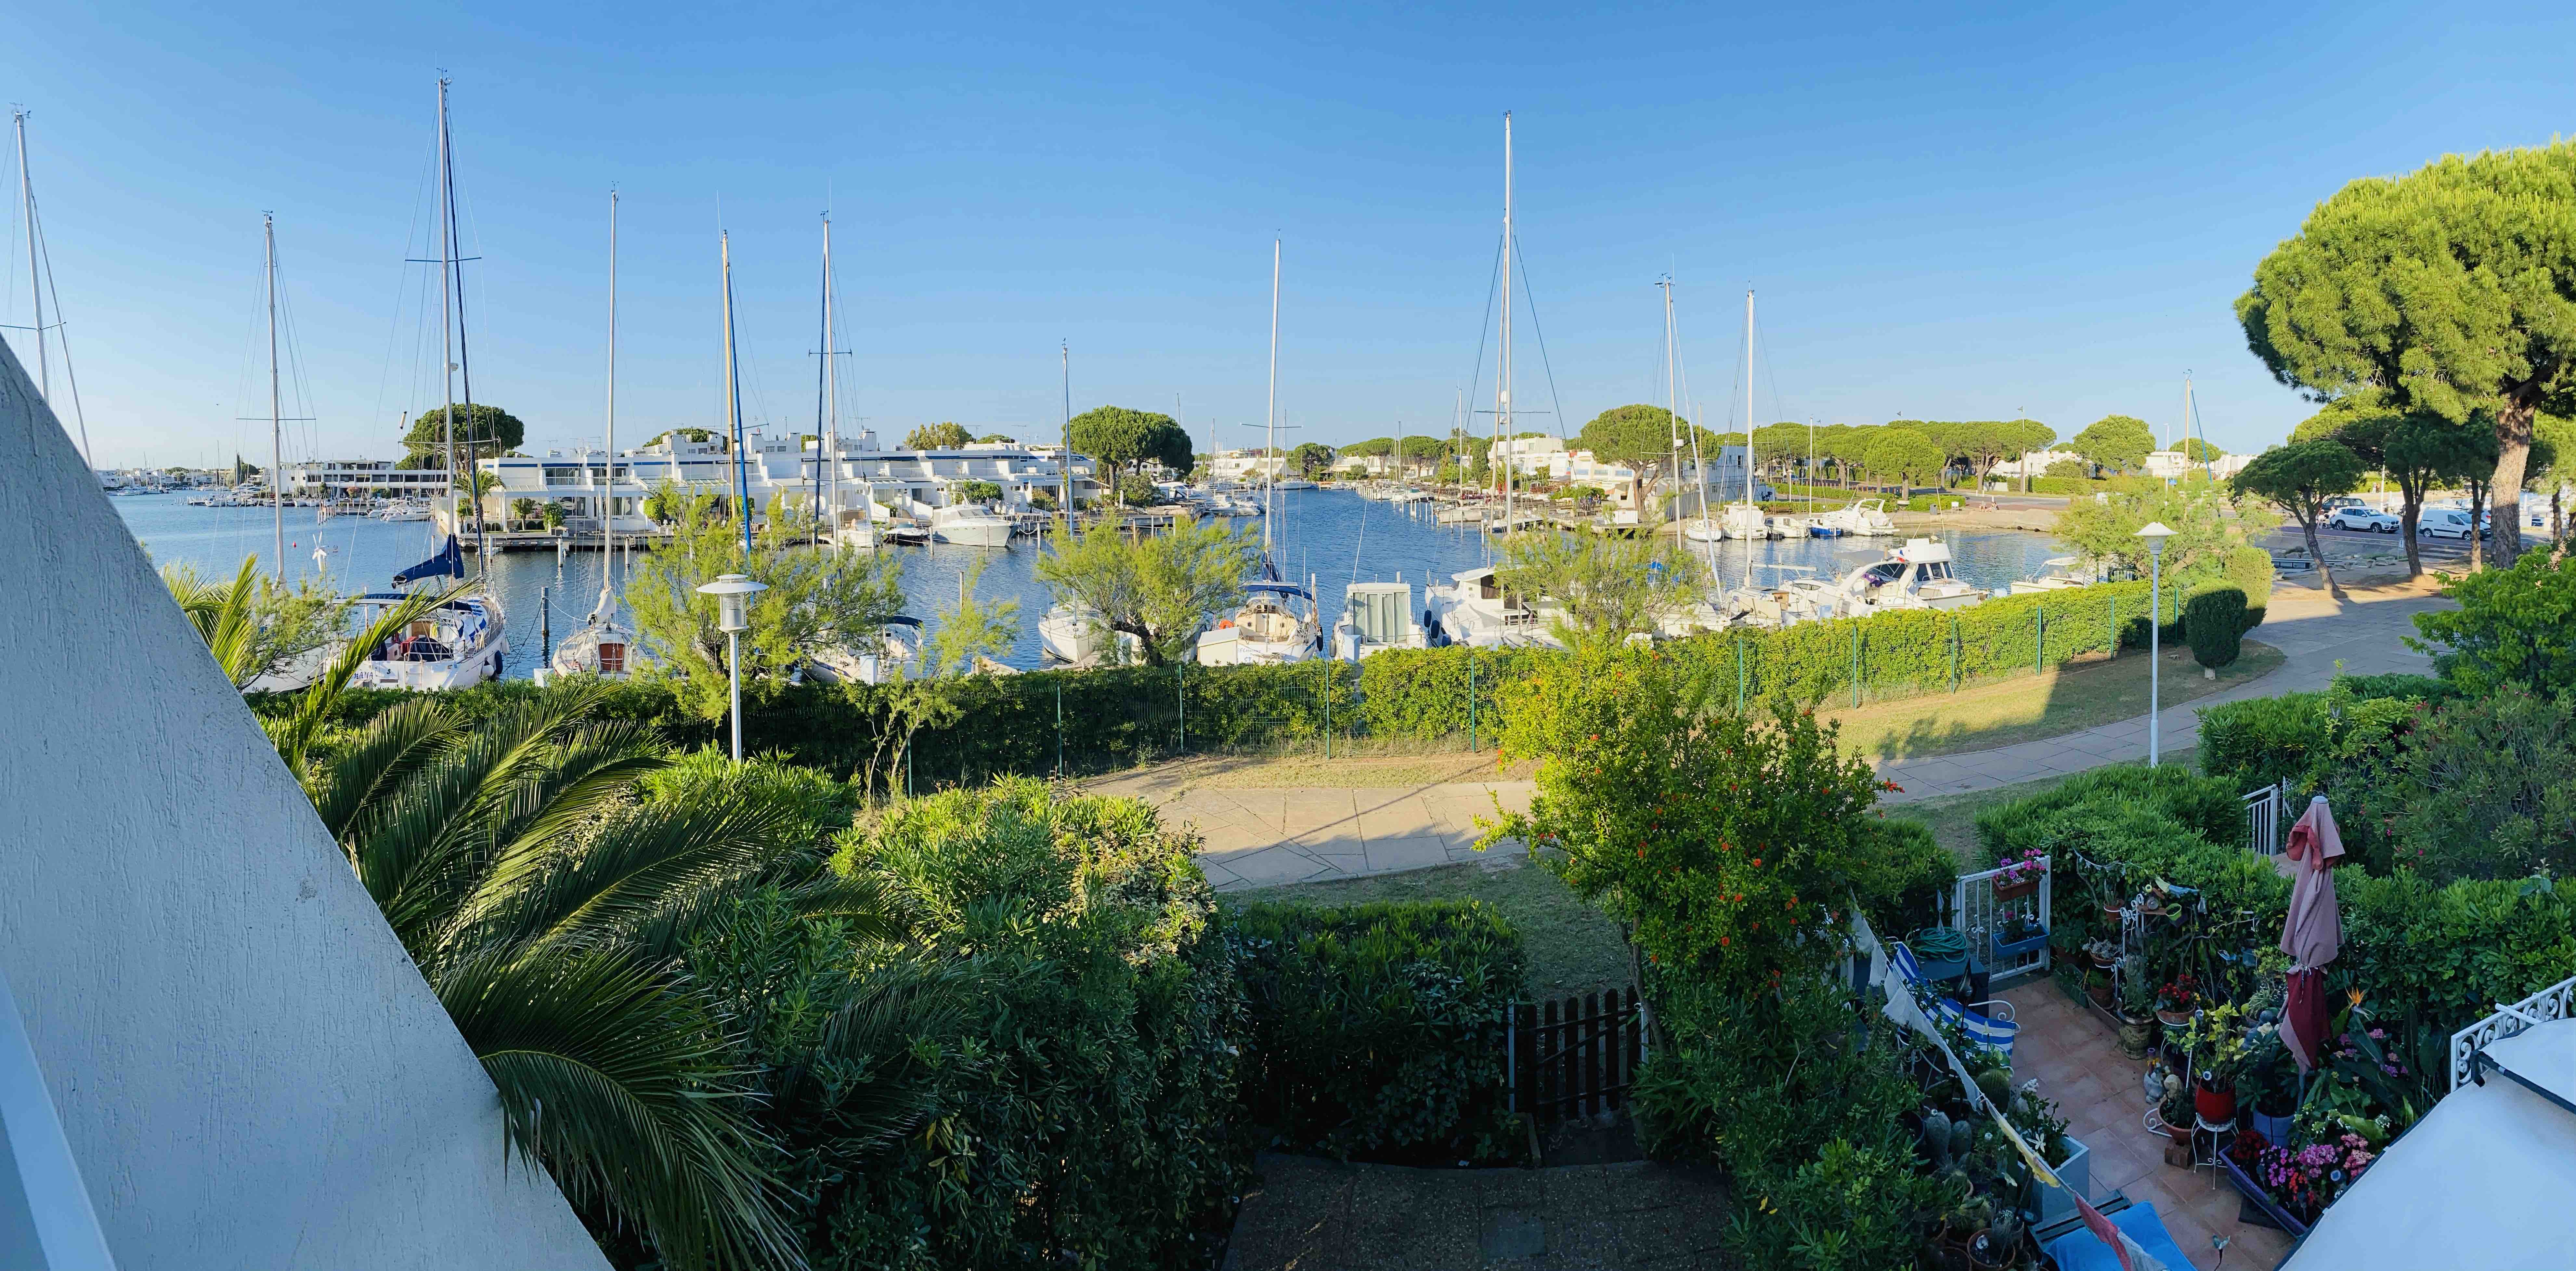 Port Camargue South Beach Santa Maria Superb view - Flats for Rent in Le  Grau-du-Roi, Occitanie, France - Airbnb